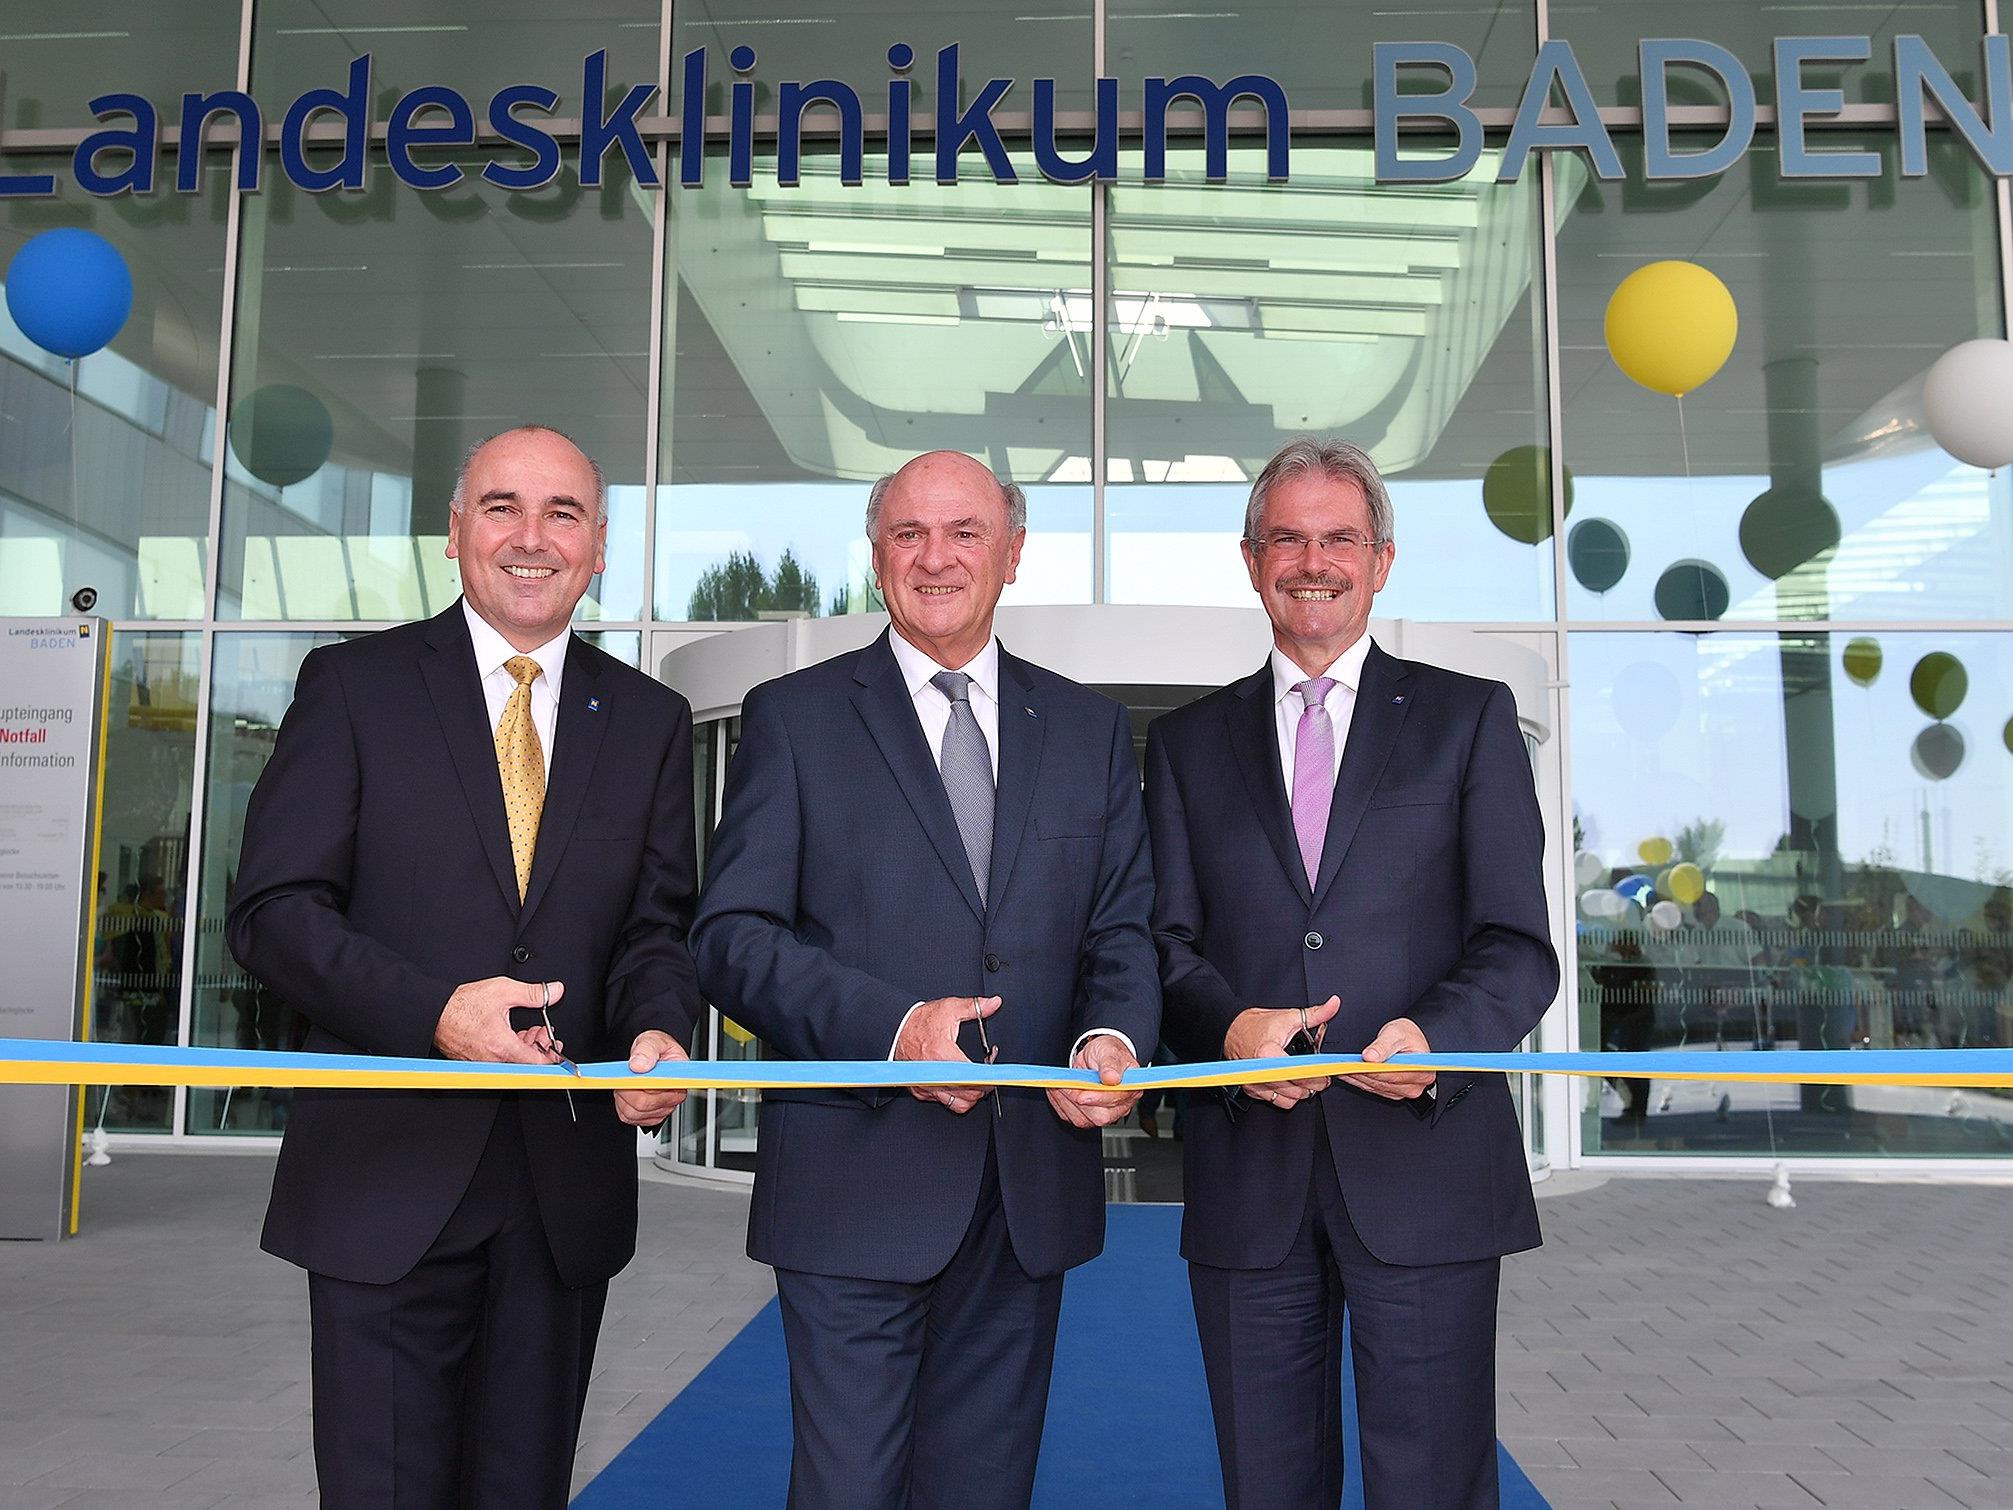 Am Montag wurde der Neubau des Landesklinikum Baden eröffnet.